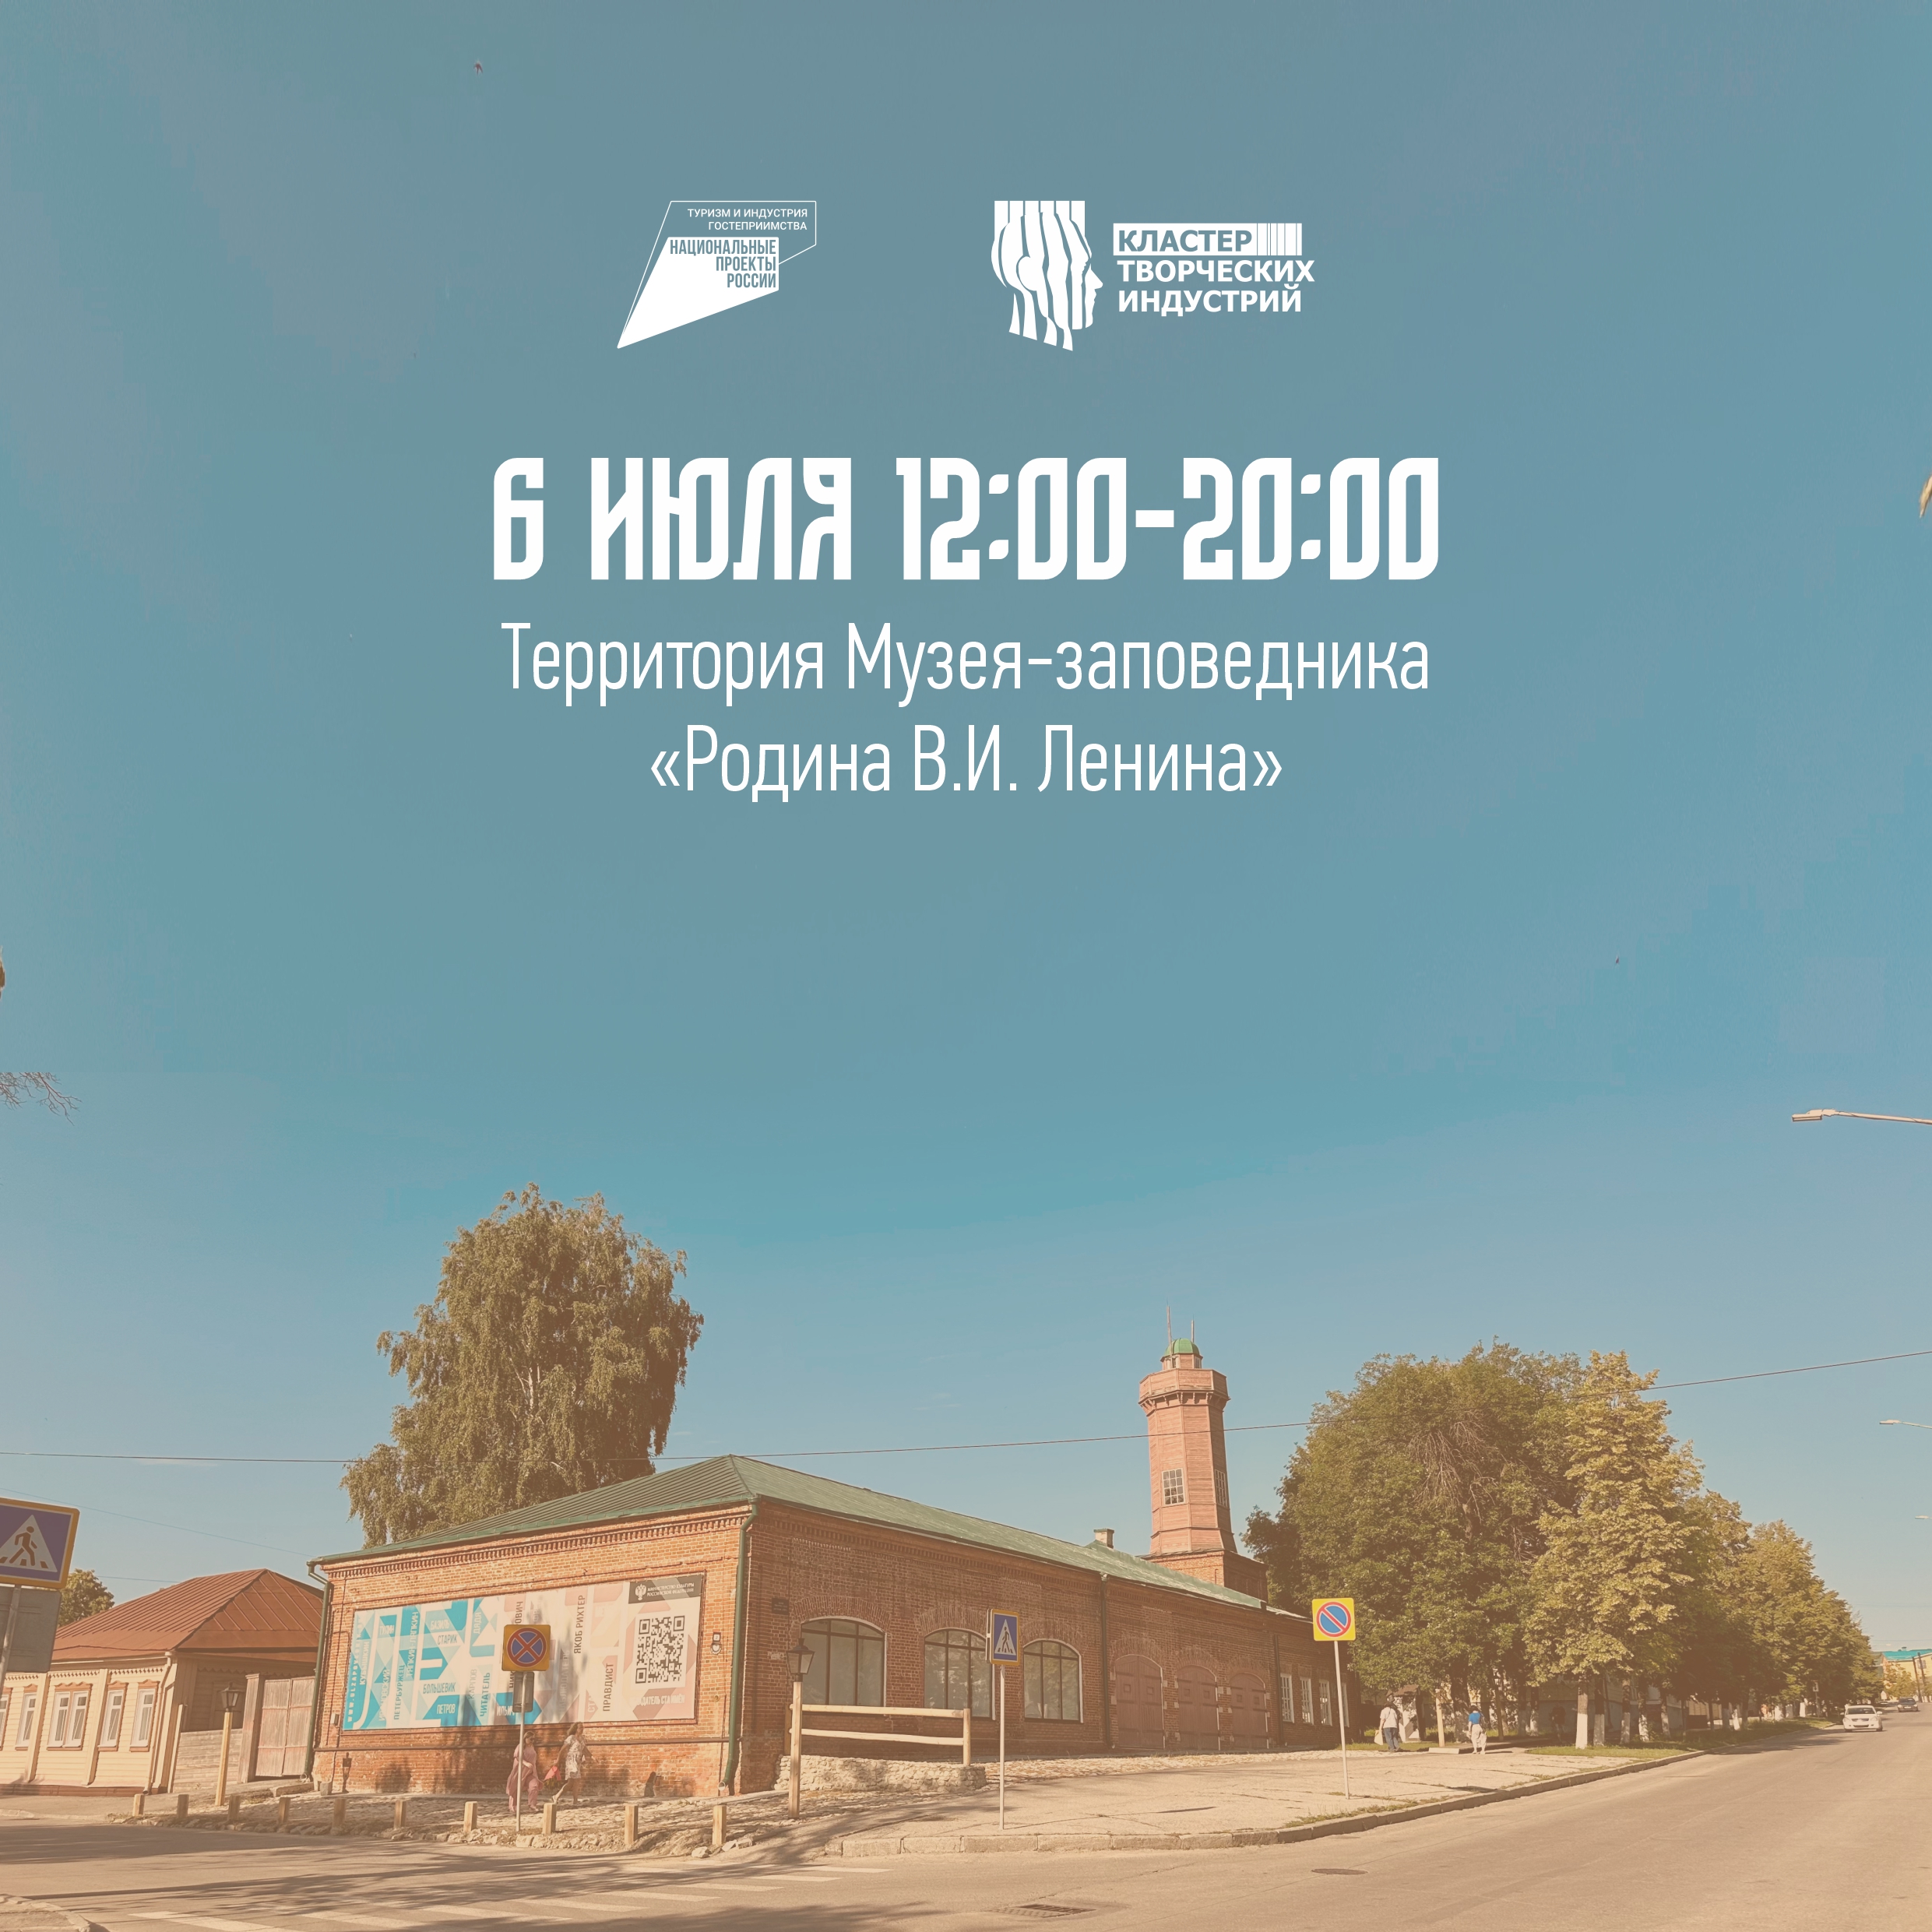 Ульяновск ждет теплый летний фестиваль «Окна»!.